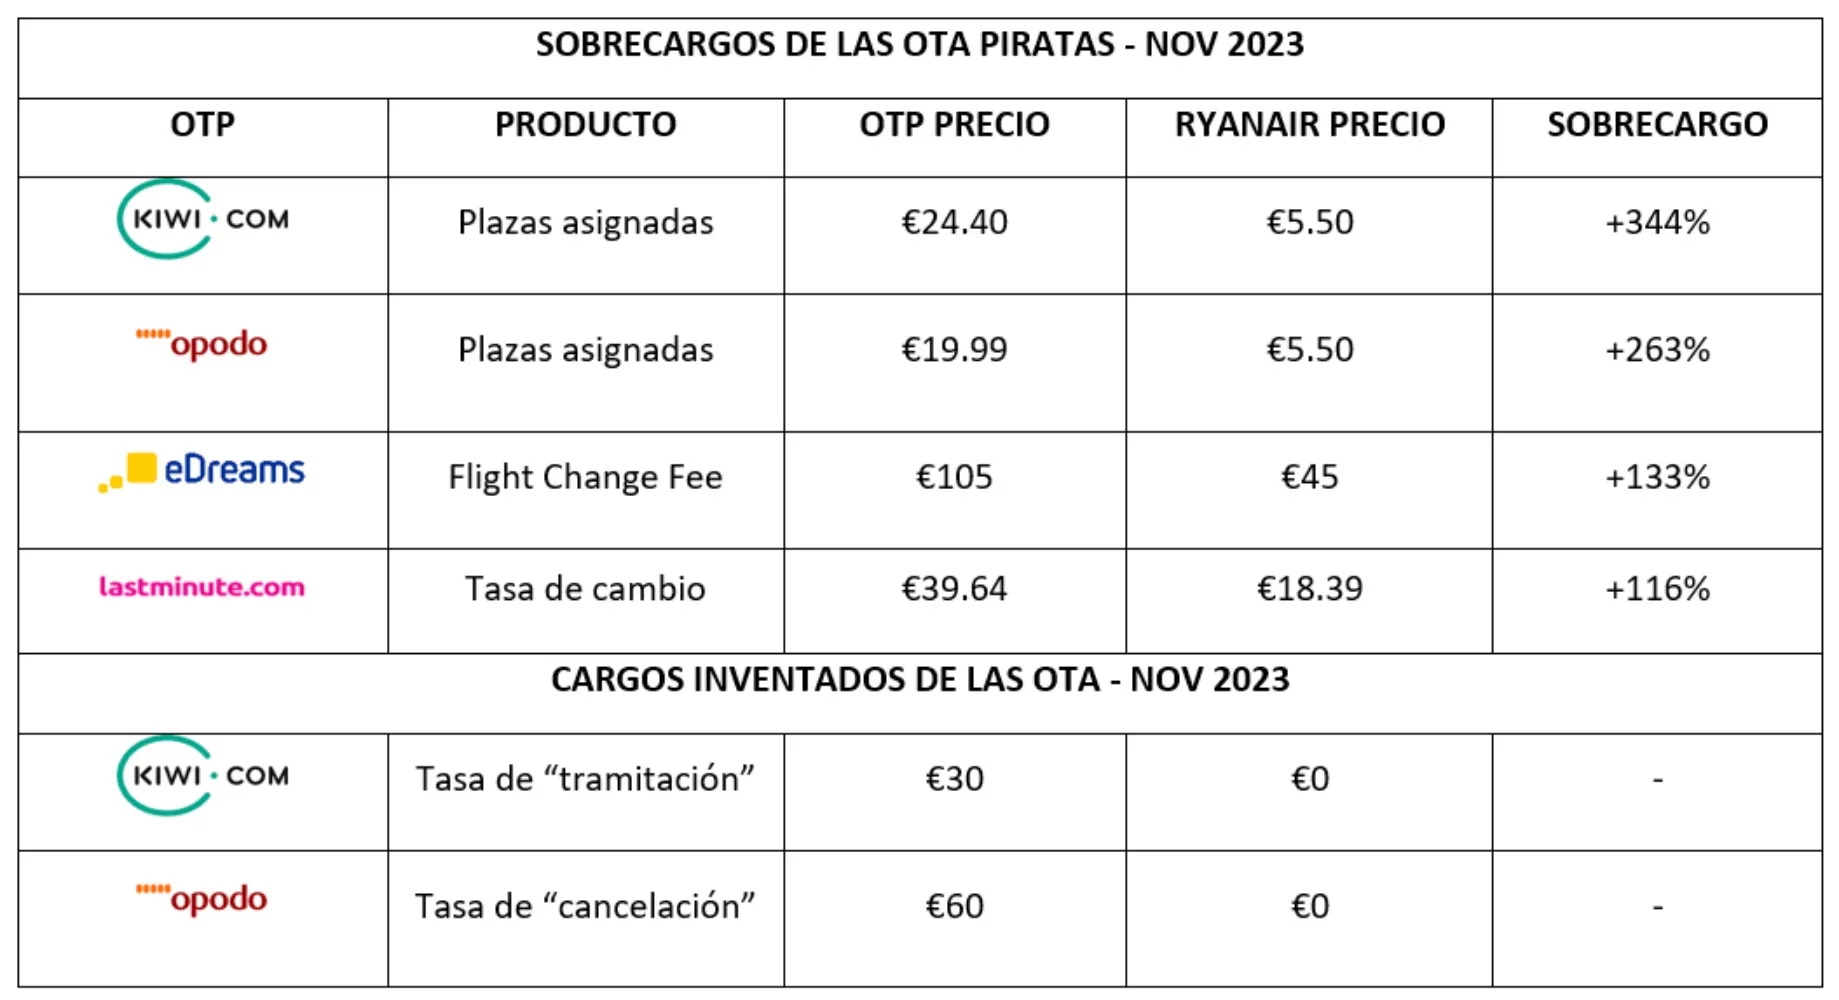 Sobrecargos que aplican las OTA según Ryanair / RYANAIR